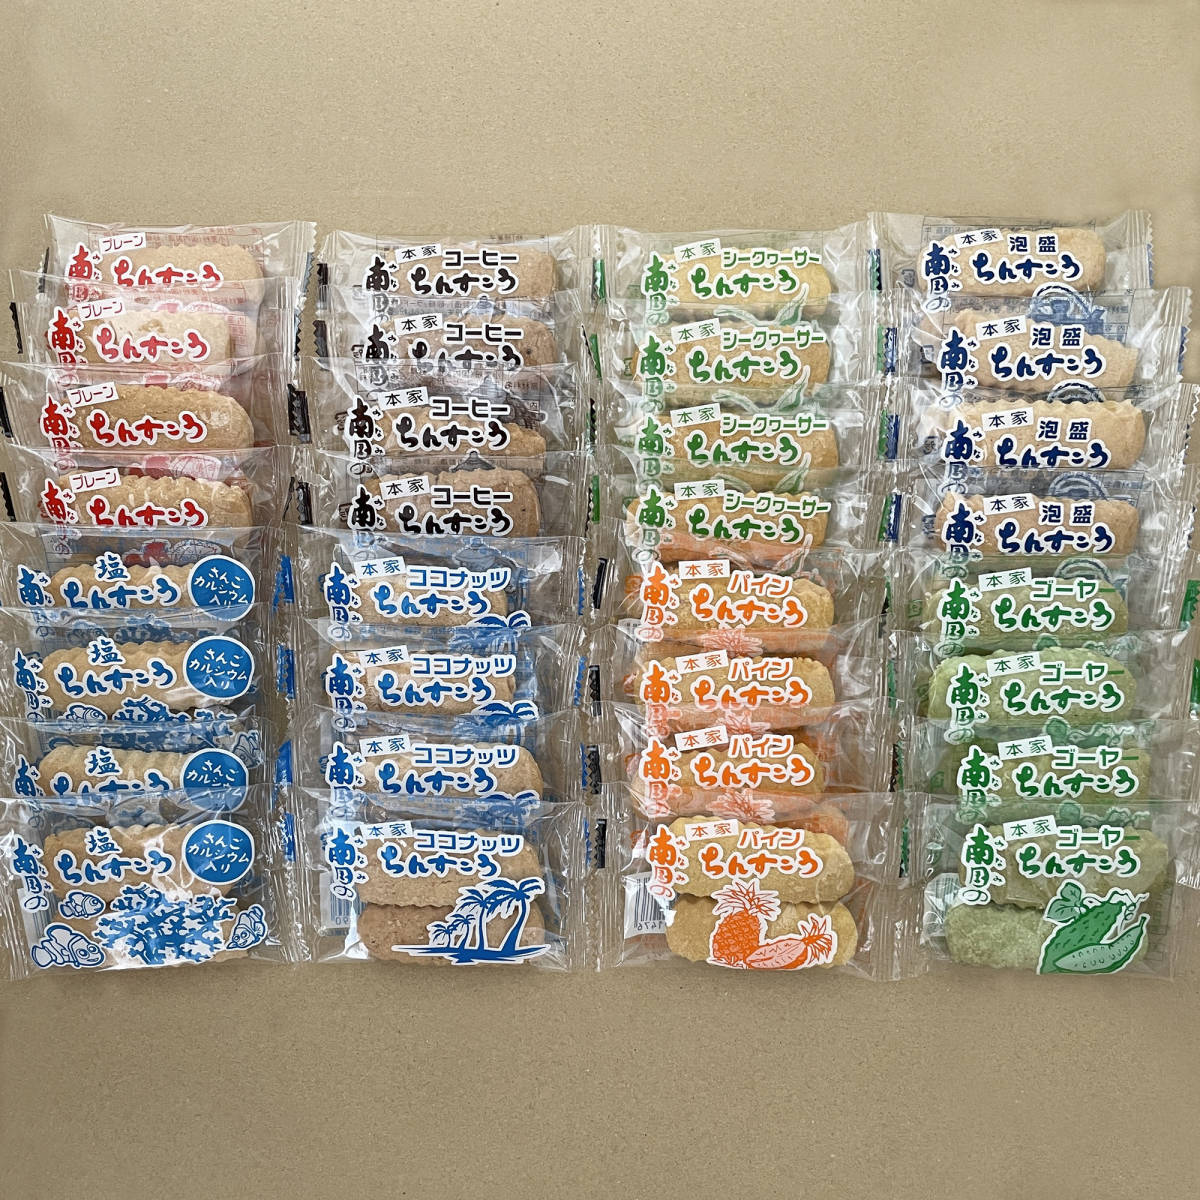 ちんすこう 8種類の詰め合わせB 32袋 64個 沖縄 お菓子 南国製菓_画像1